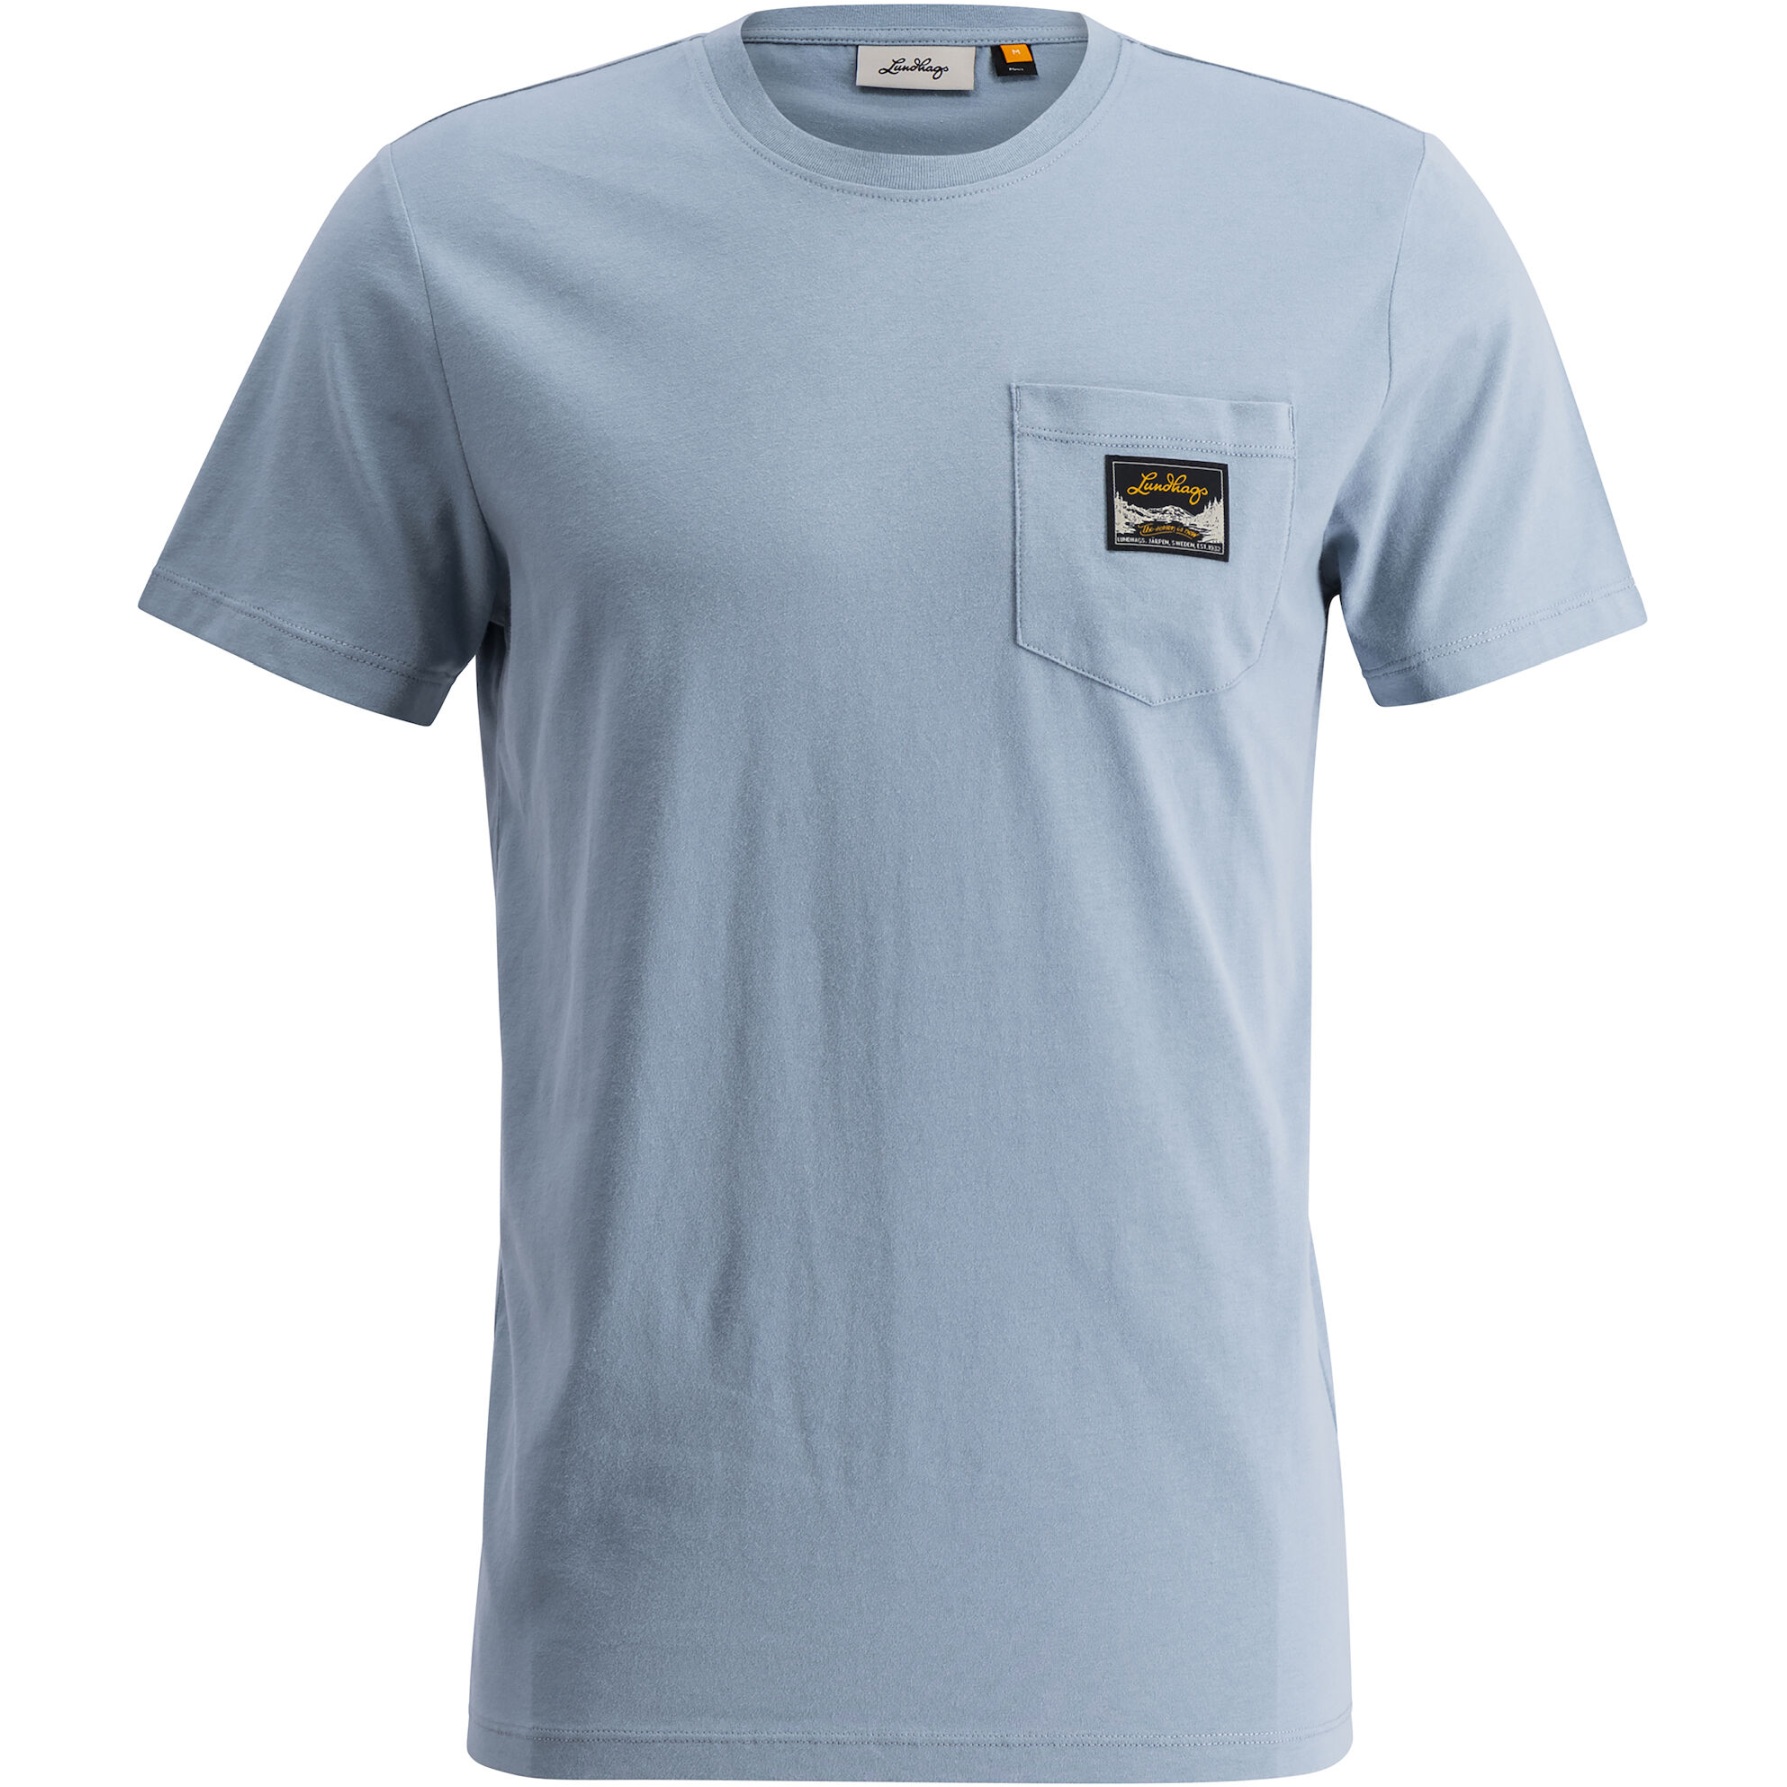 Produktbild von Lundhags Knak T-Shirt Herren - Faded Denim 76500